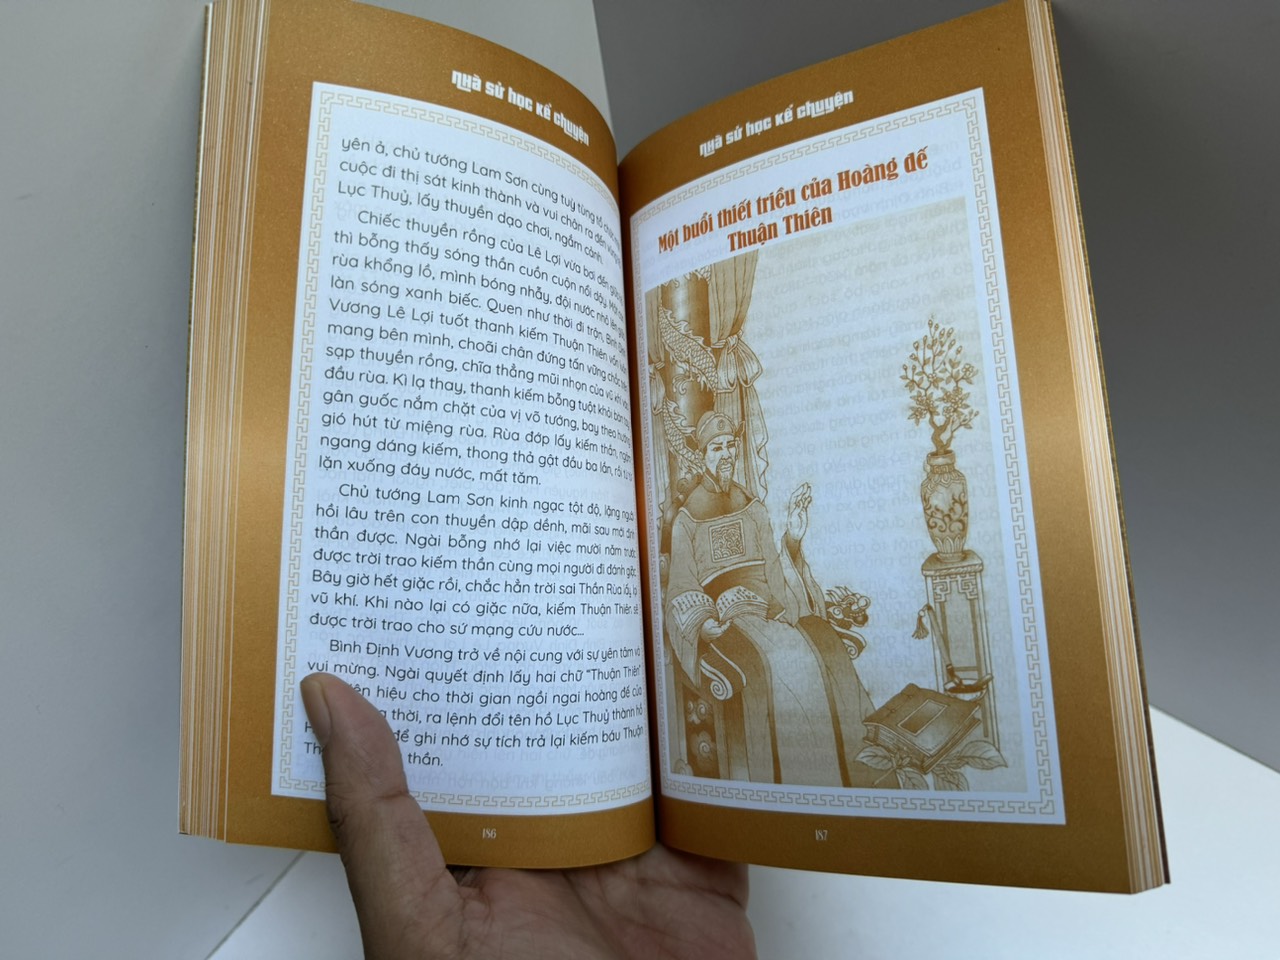 (Tranh minh hoạ) KỂ CHUYỆN LỊCH SỬ CHO TUỔI THƠ - Nhà sử học Lê Văn Lan - HanoiBooks